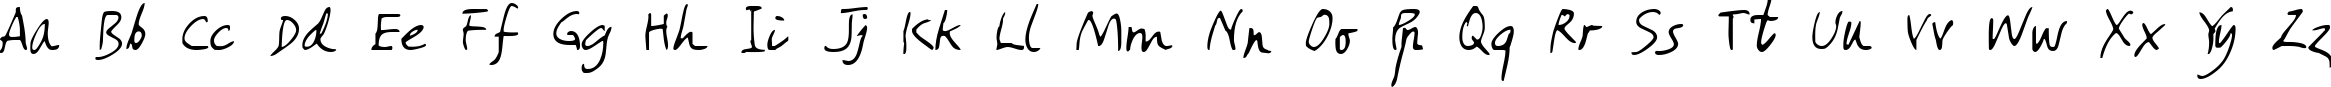 Пример написания английского алфавита шрифтом Amano